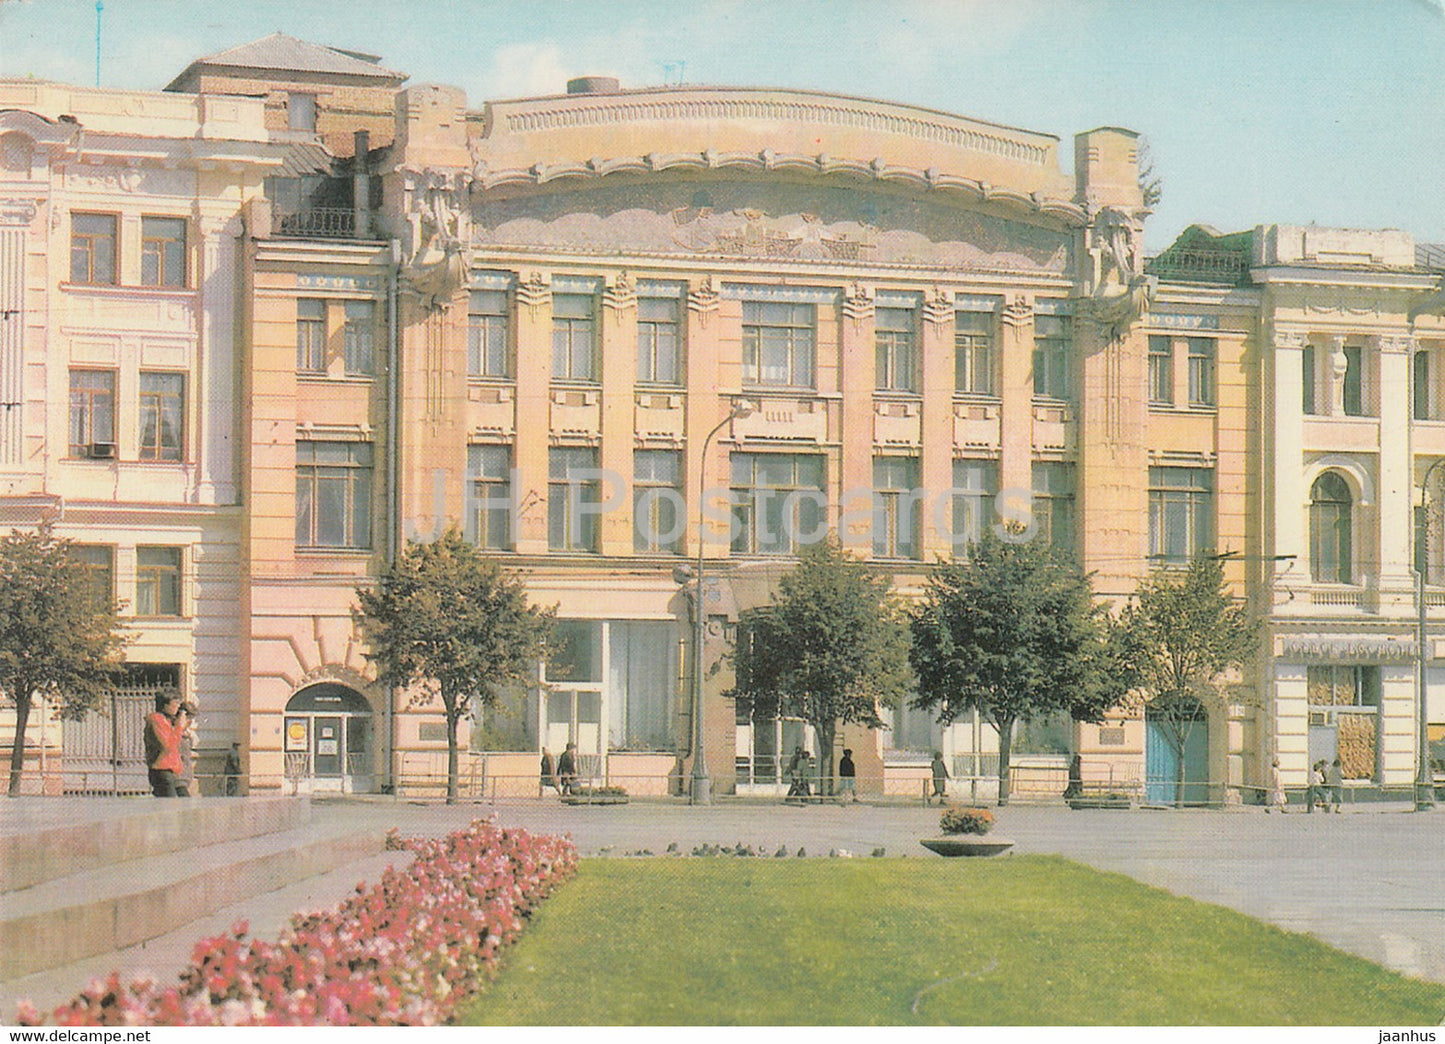 Kharkiv - Kharkov - Krupskaya Puppet Theatre - postal stationery - 1987 - Ukraine USSR - unused - JH Postcards